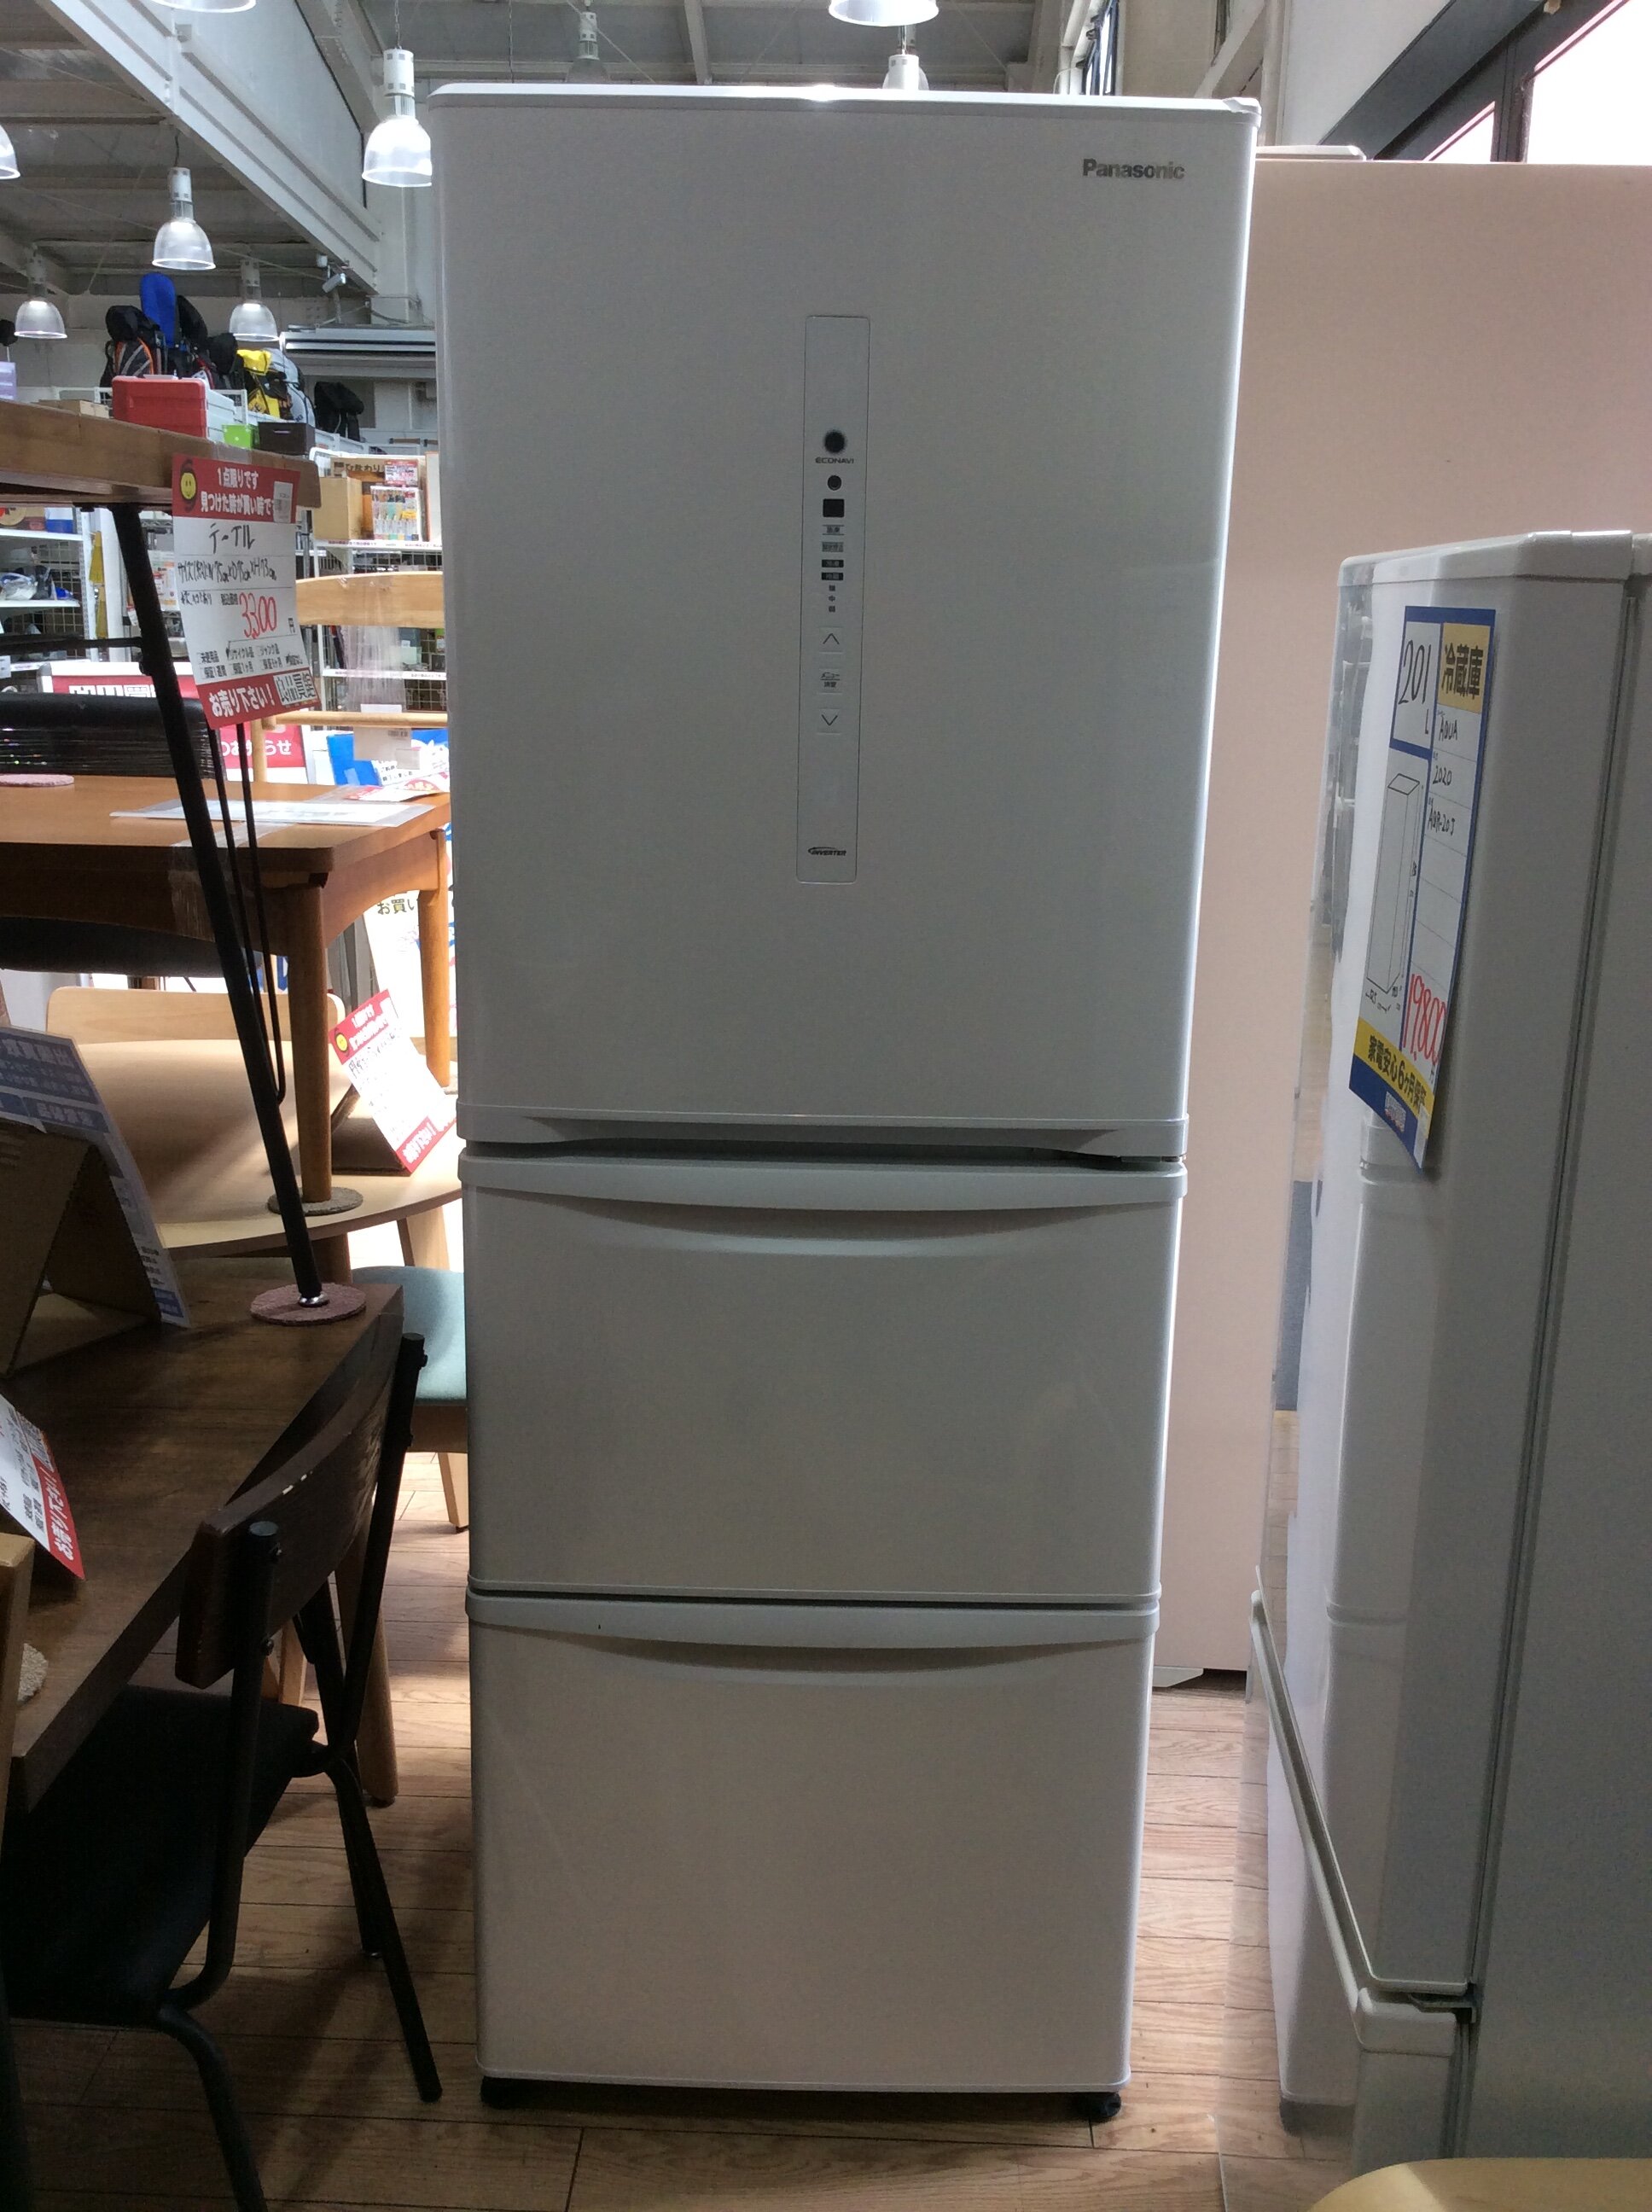 2011年式 321L ノンフロン冷凍冷蔵庫 パナソニックNR-C320M-CK - 冷蔵庫